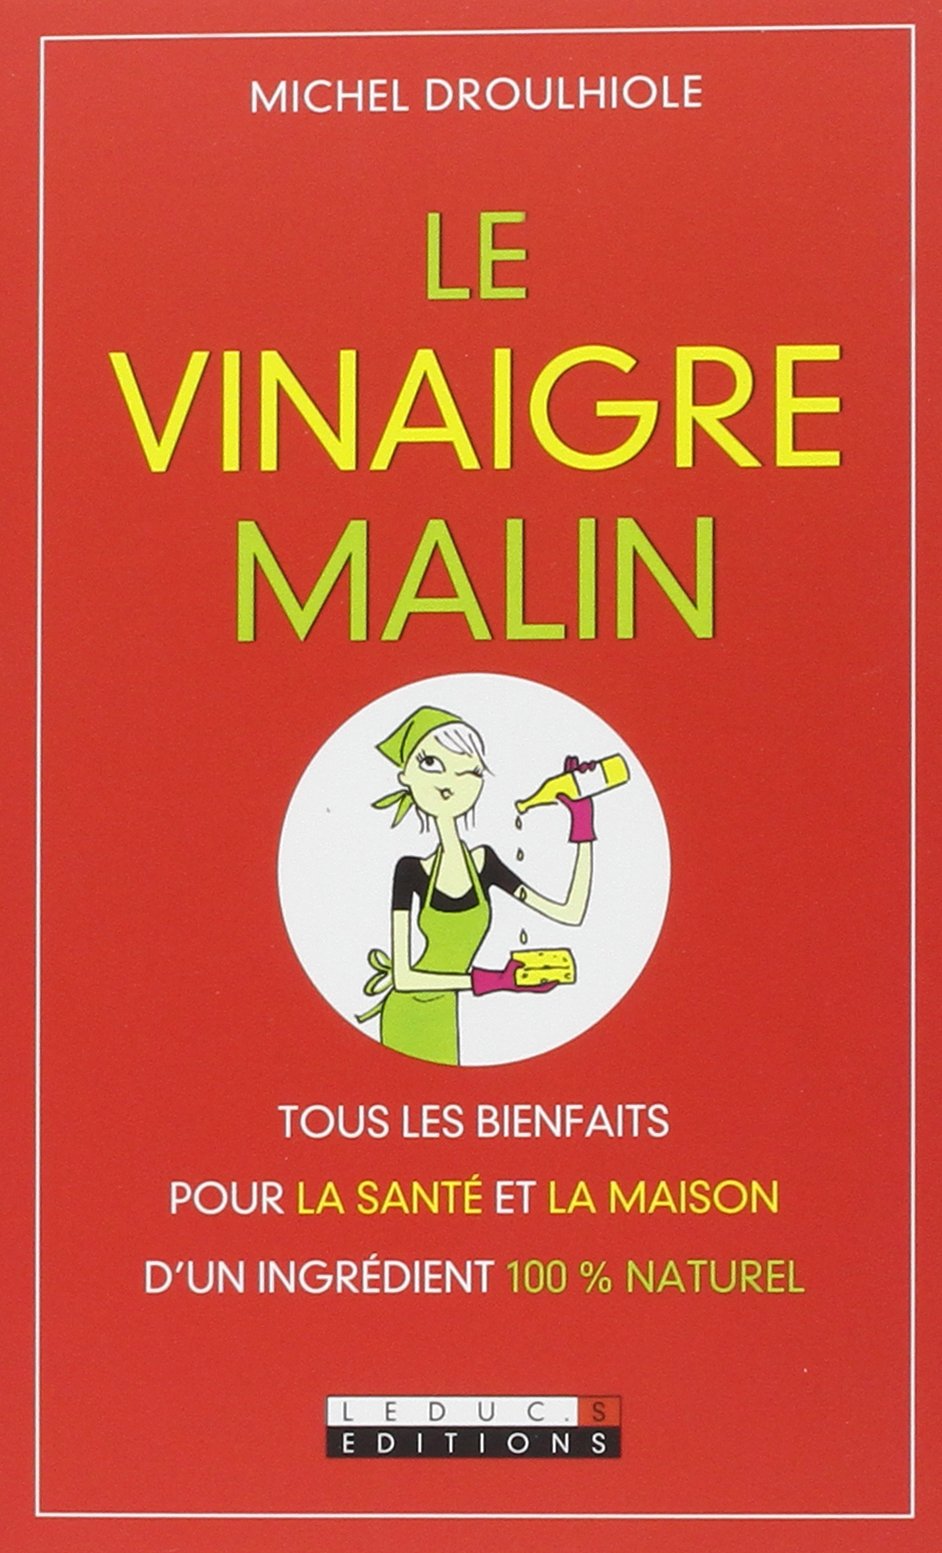 Le vinaigre malin - Michel Droulhiole